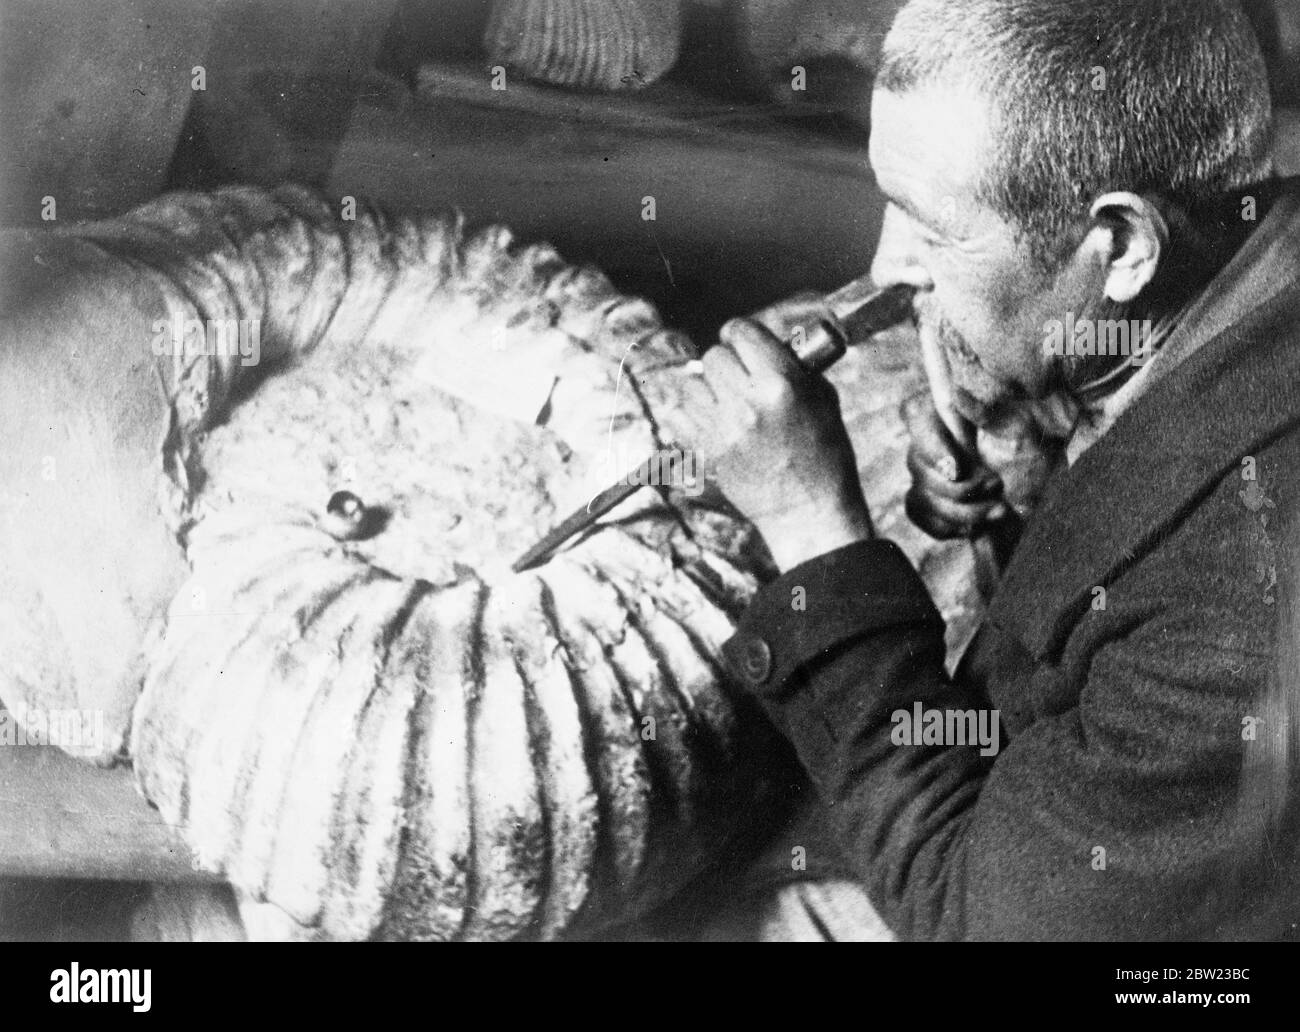 Un amonite (concha fósil) de tamaño inusualmente grande que fue encontrado en depósitos Jurásicos en los suburbios de Maikop, URSS del Cáucaso Norte. La concha tiene 69 cm de diámetro y pesa 75 kg. Los geólogos declaran que los amonites fósiles de tan gran tamaño son extremadamente raros. 13 de octubre de 1937.[?] Foto de stock